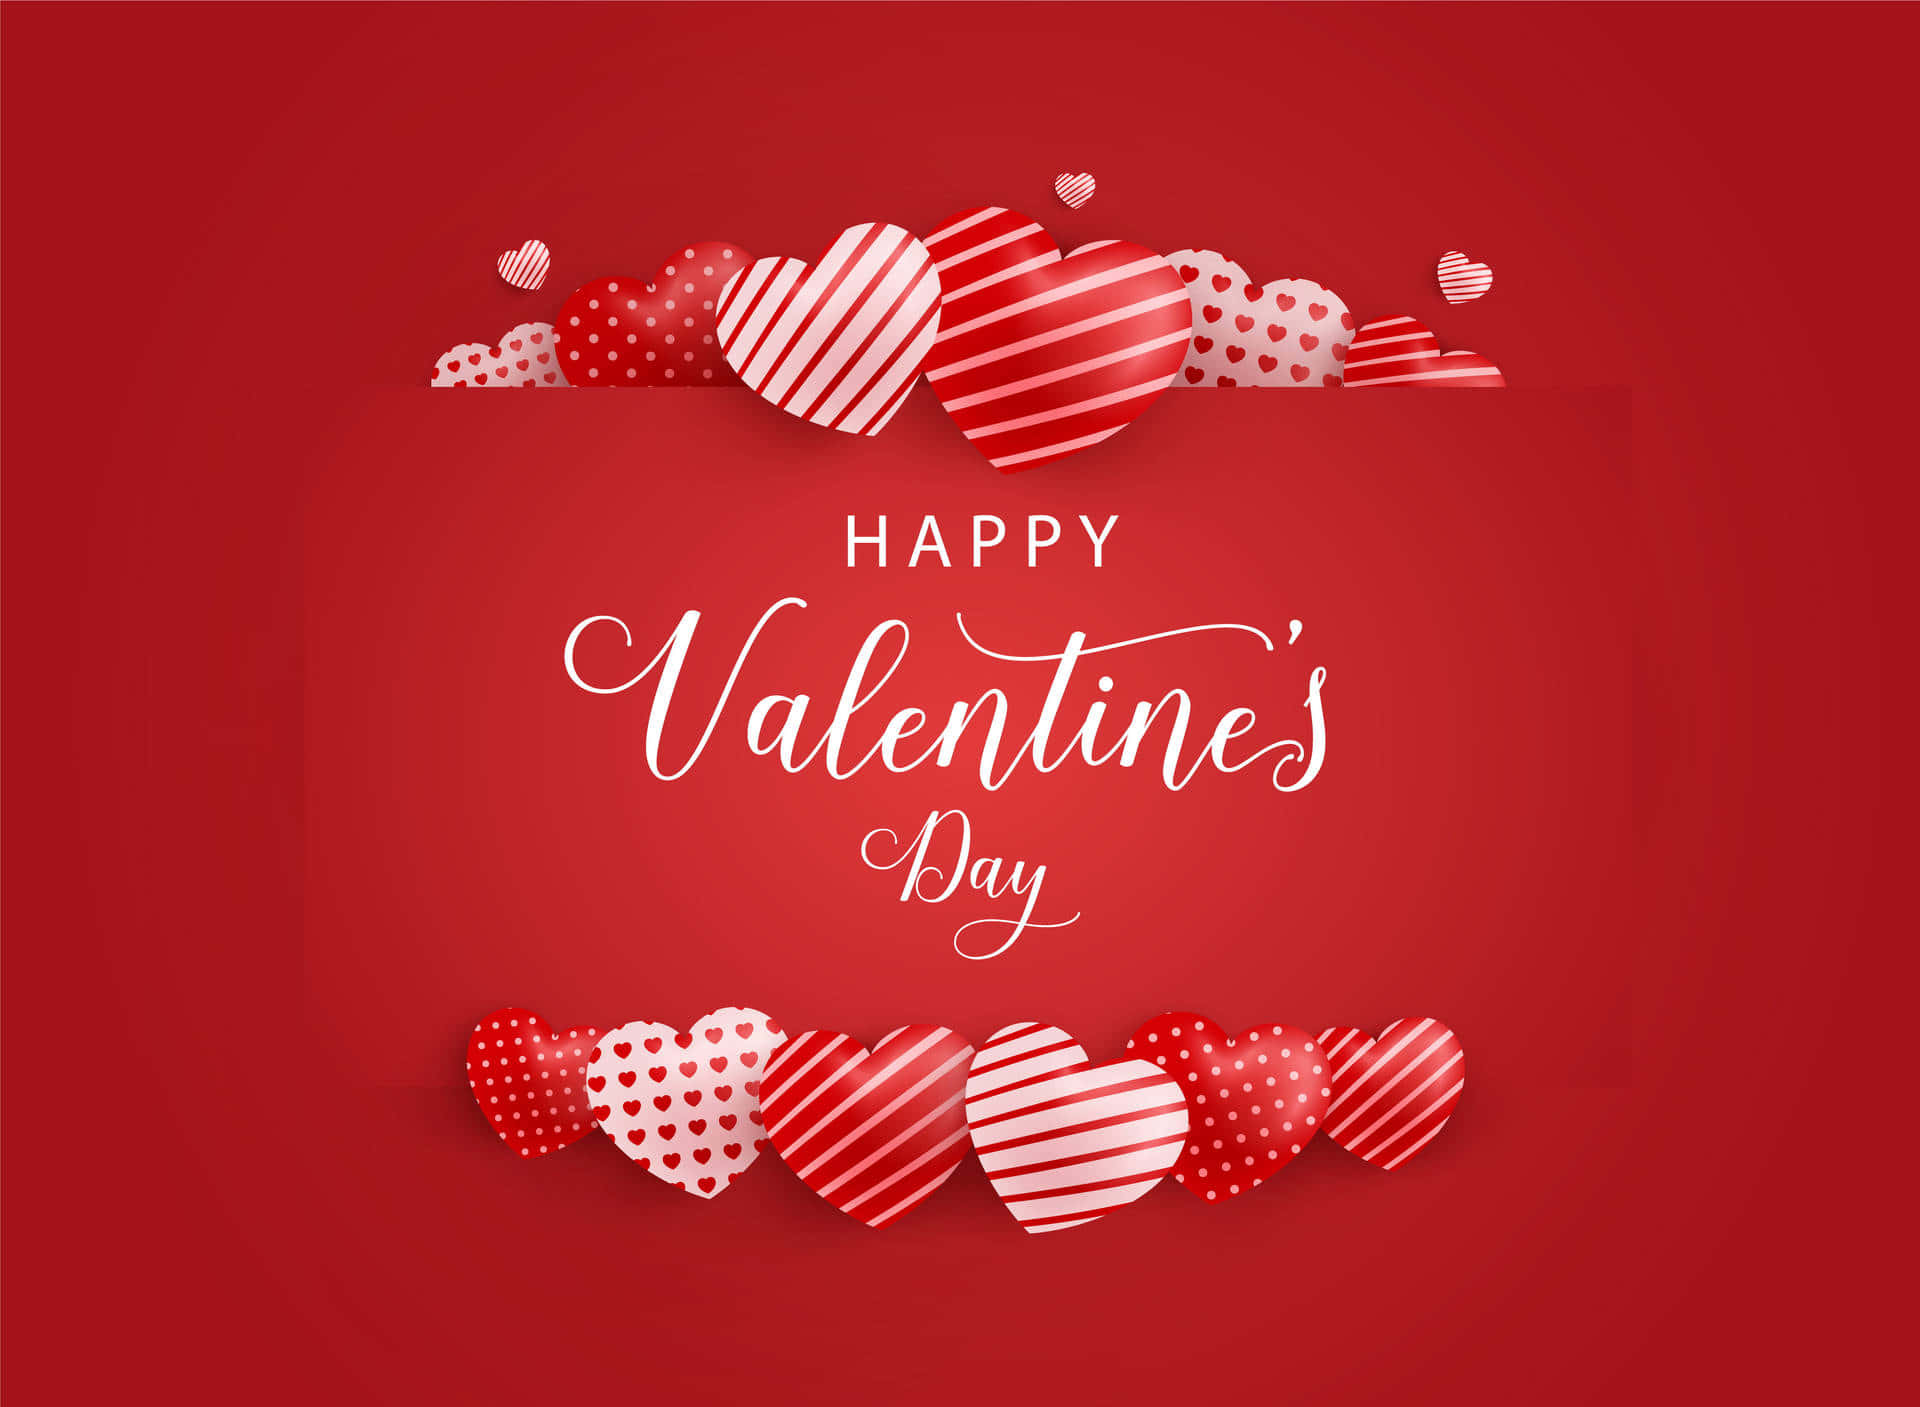 Celebrael Amor Con Un Fondo Feliz De San Valentín.